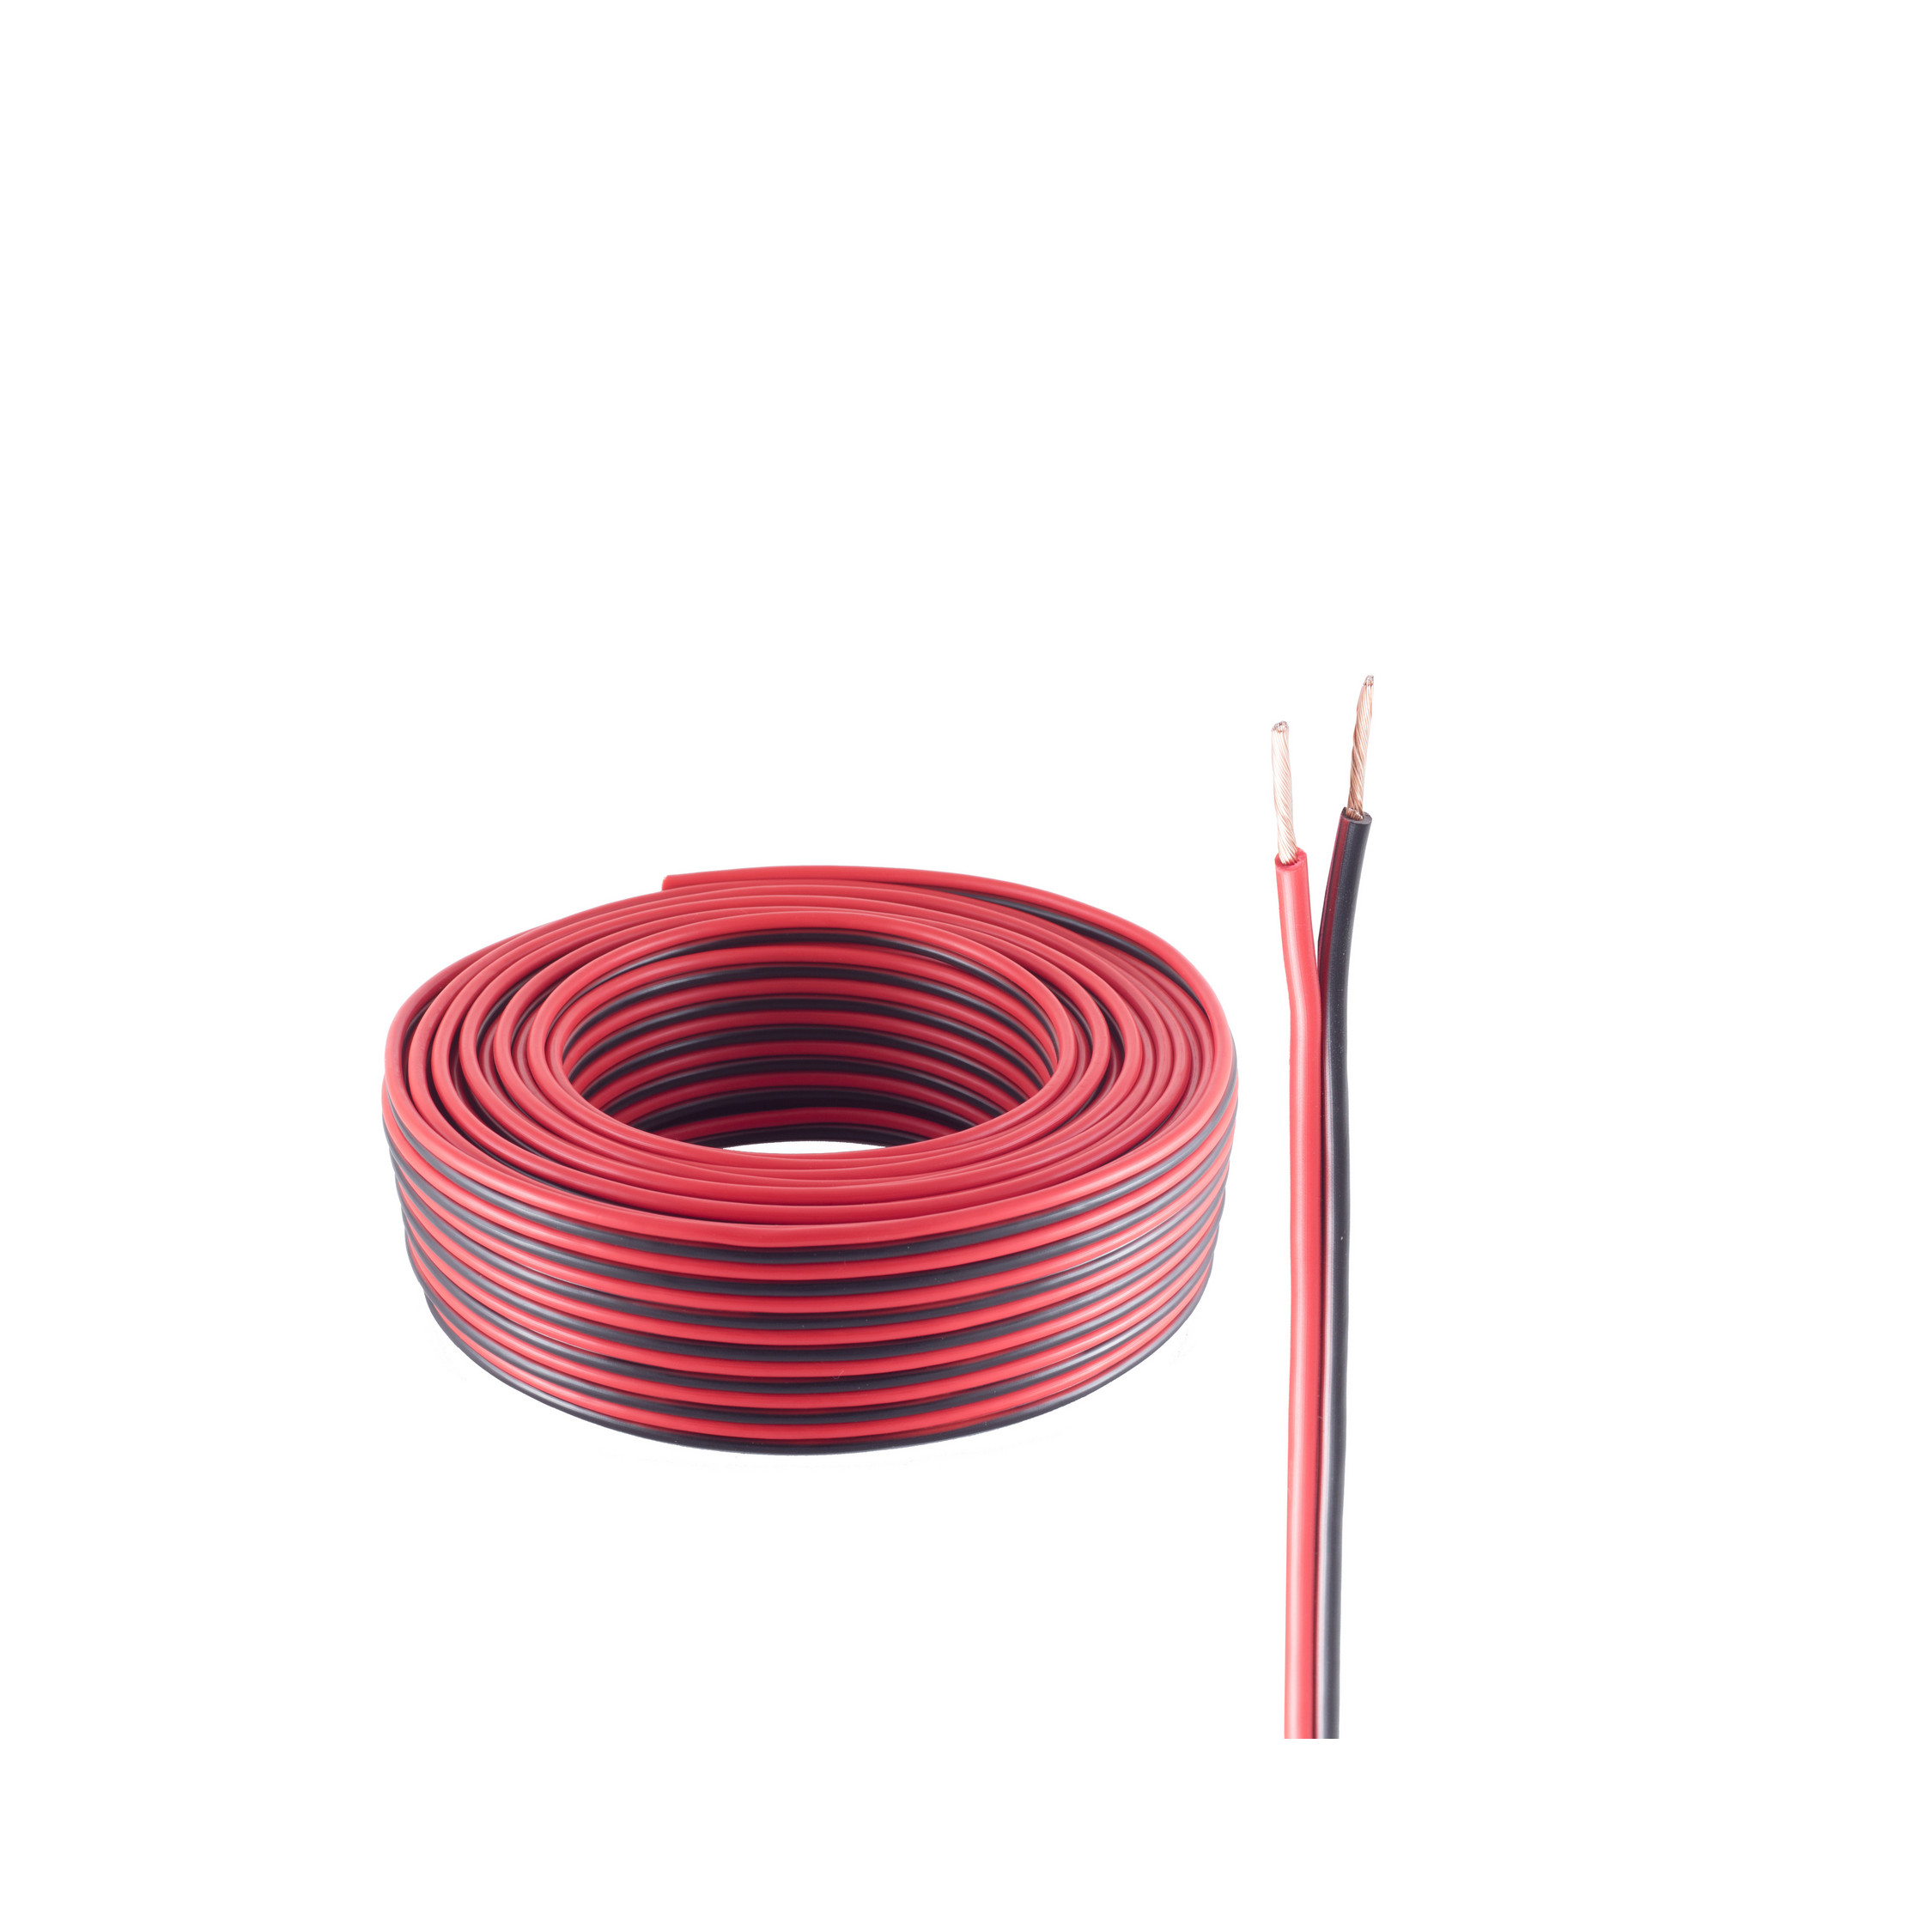 SHIVERPEAKS LS-Kabel 0,75mm² m 10 rot/schwarz 24x0,2 CCA 10m, Lautsprecher Kabel